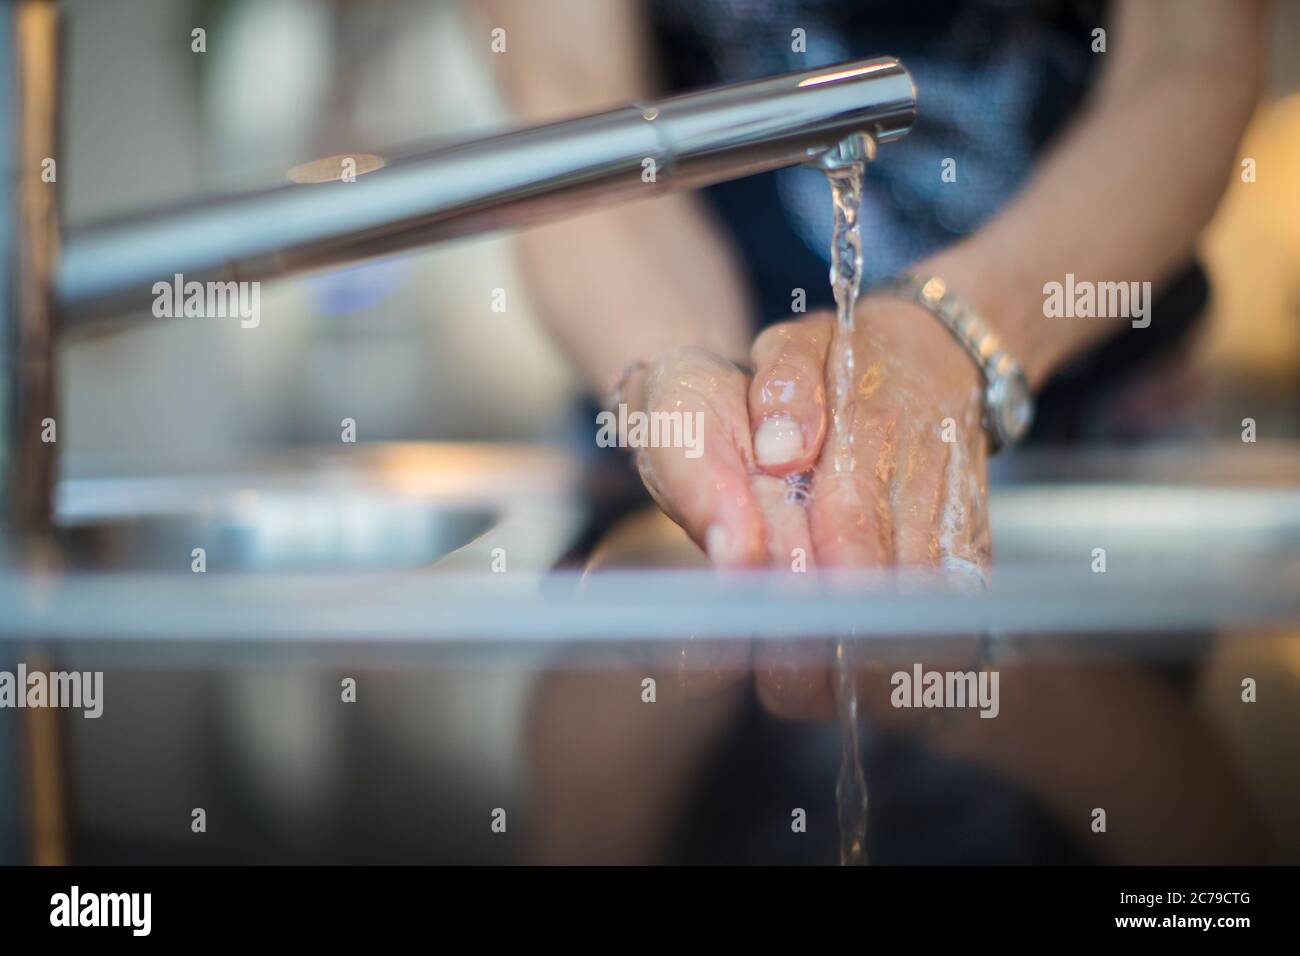 Primo piano donna lavando le mani al lavello della cucina Foto Stock